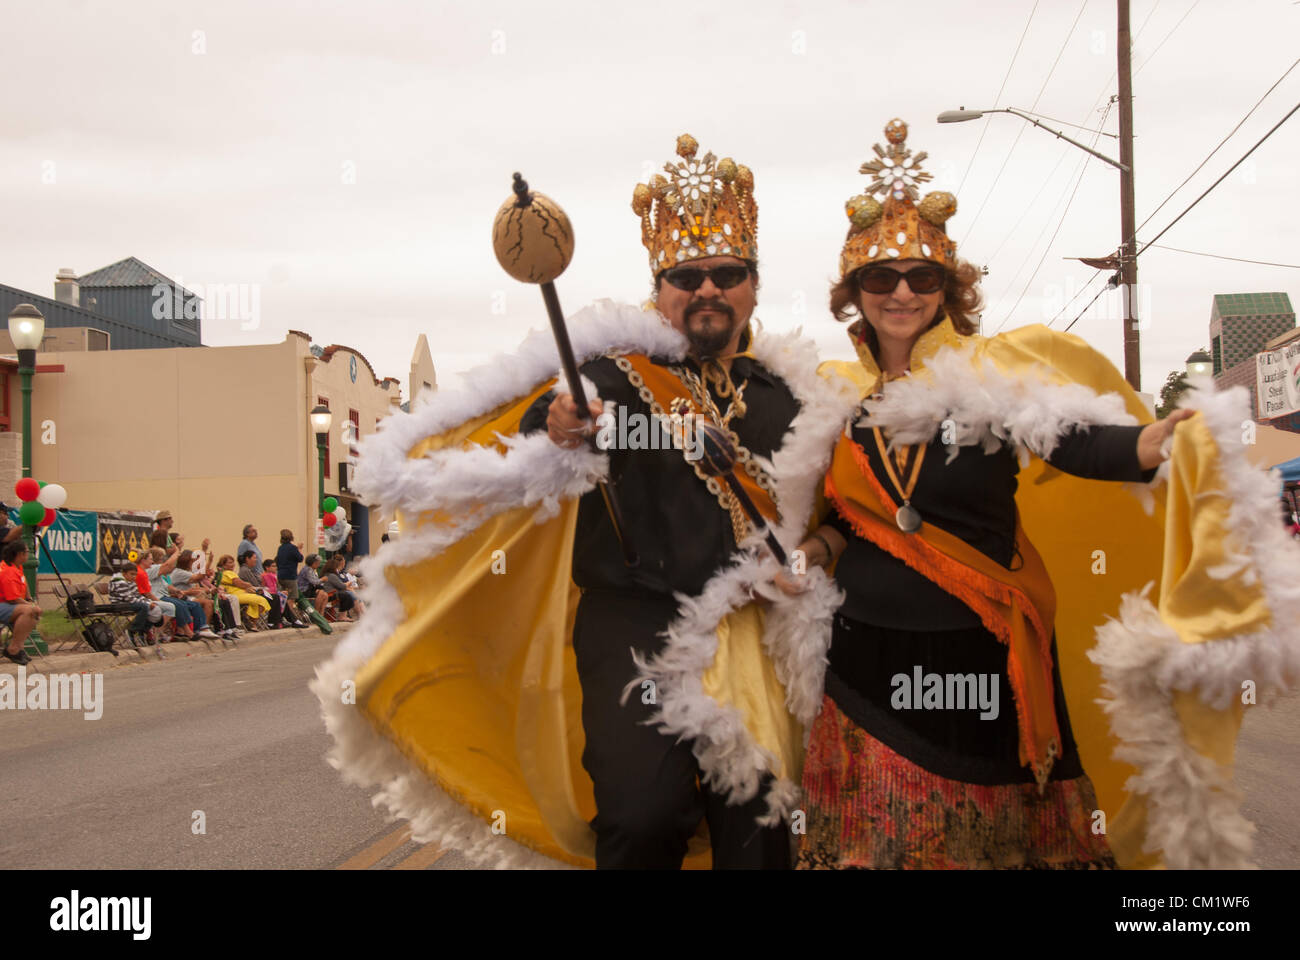 15. September 2012 San Antonio, Texas, USA - der König und die Königin der Huevos Rancheros aus der San Antonio Cultural Arts Association beteiligen sich an der jährlichen Diez y Seis-Parade zum mexikanischen Unabhängigkeitstag zu feiern. Moderiert wird die Veranstaltung durch die Avenida Guadalupe Nachbarschaftsverbindung. Stockfoto